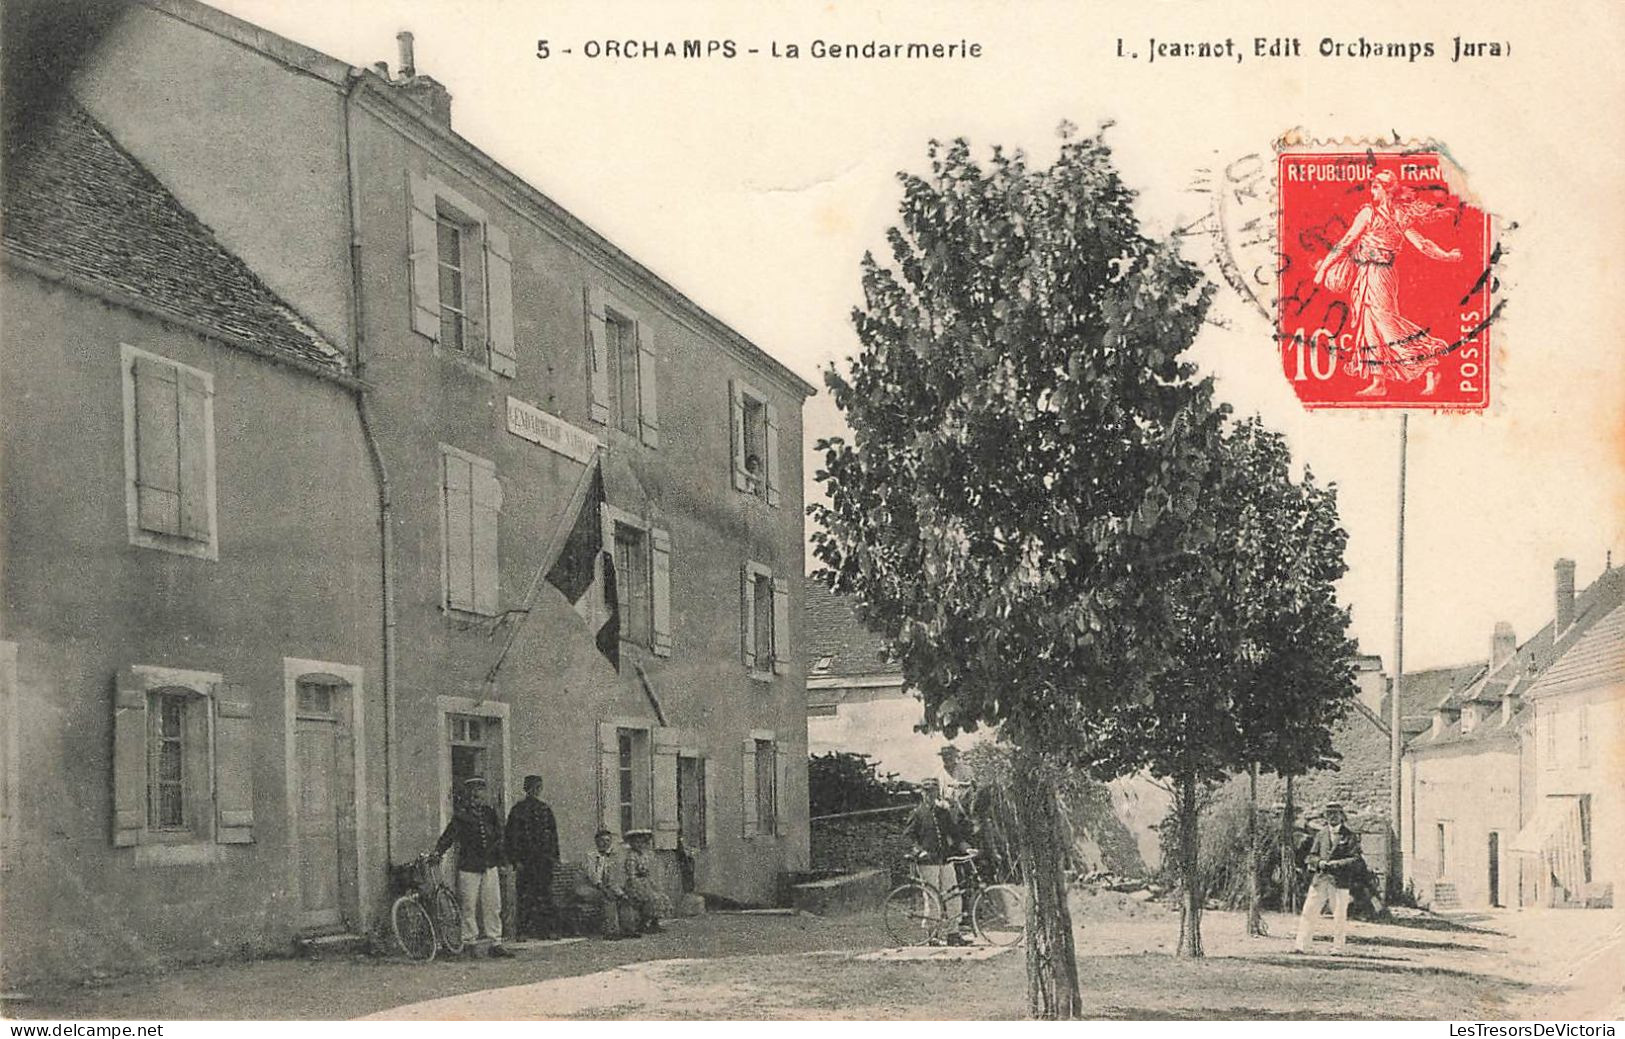 FRANCE - Orchamps La Gendarmerie - I Jeannot - Edit Orchamps Jura - Vue Panoramique - Carte Postale Ancienne - Dole